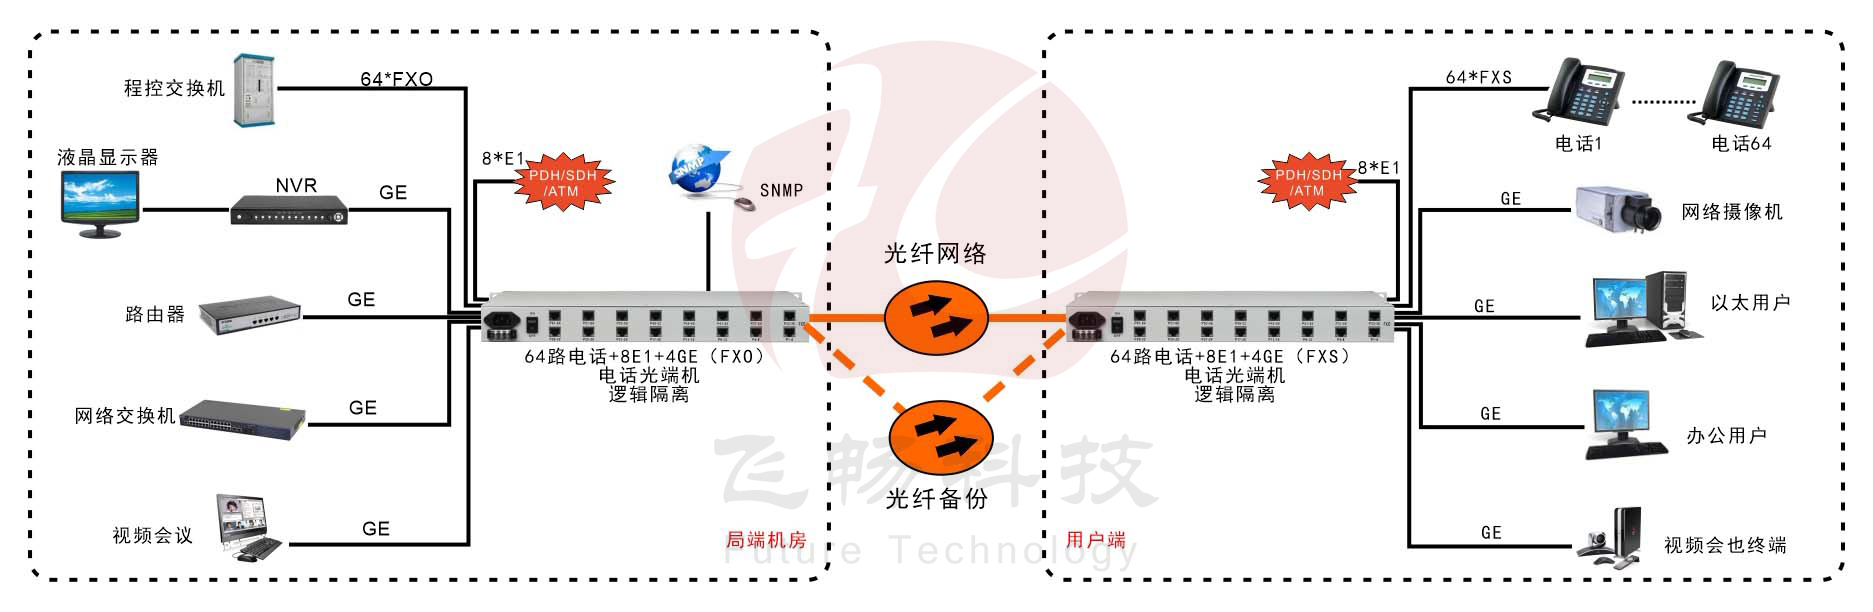 64路电话+8路E1+4路千兆以太网+SNMP管理（19英寸）5123五湖四海 应用方案图